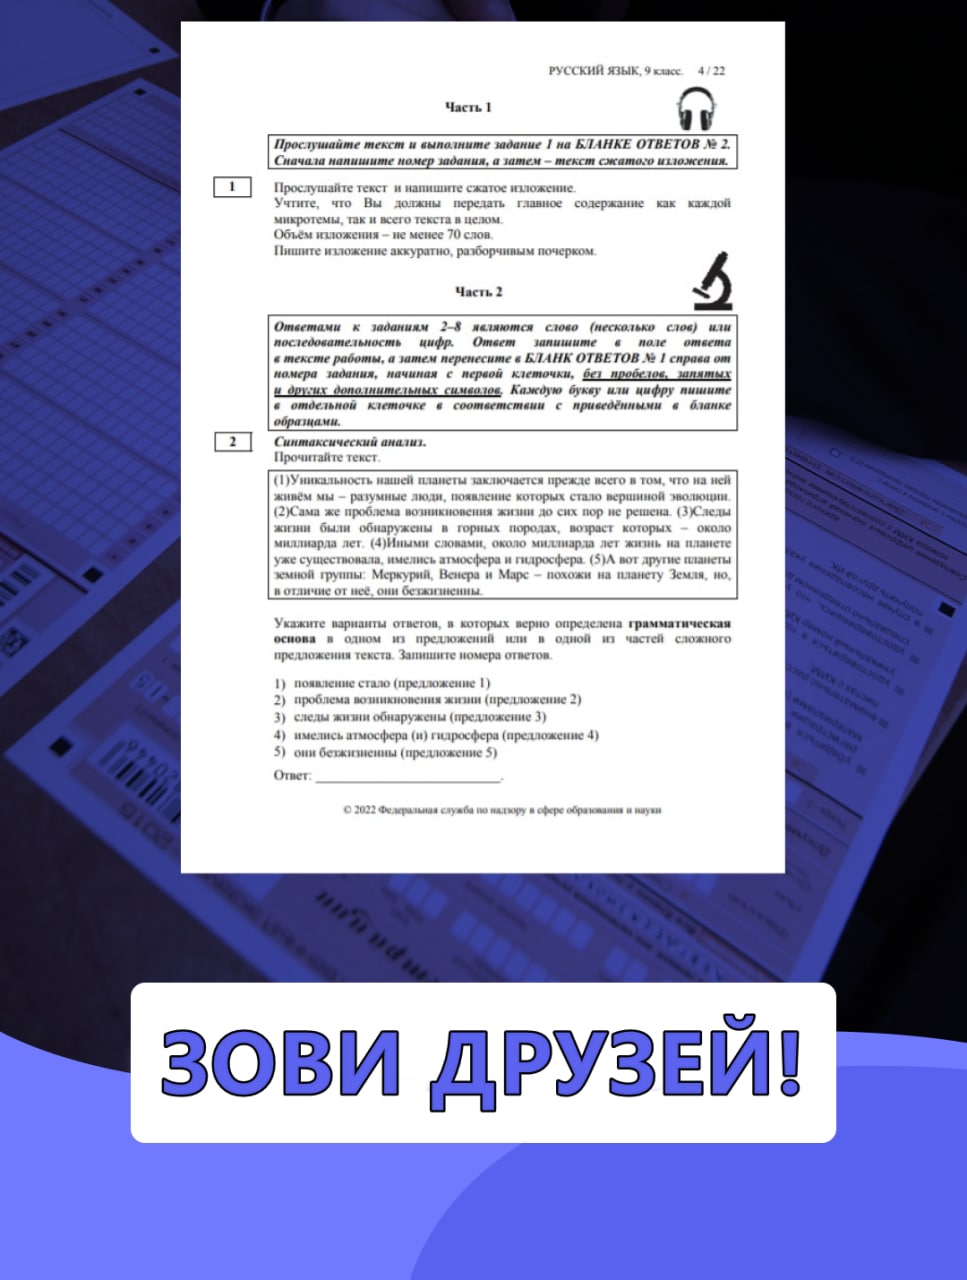 Телеграмм ответы на огэ по русскому языку фото 94